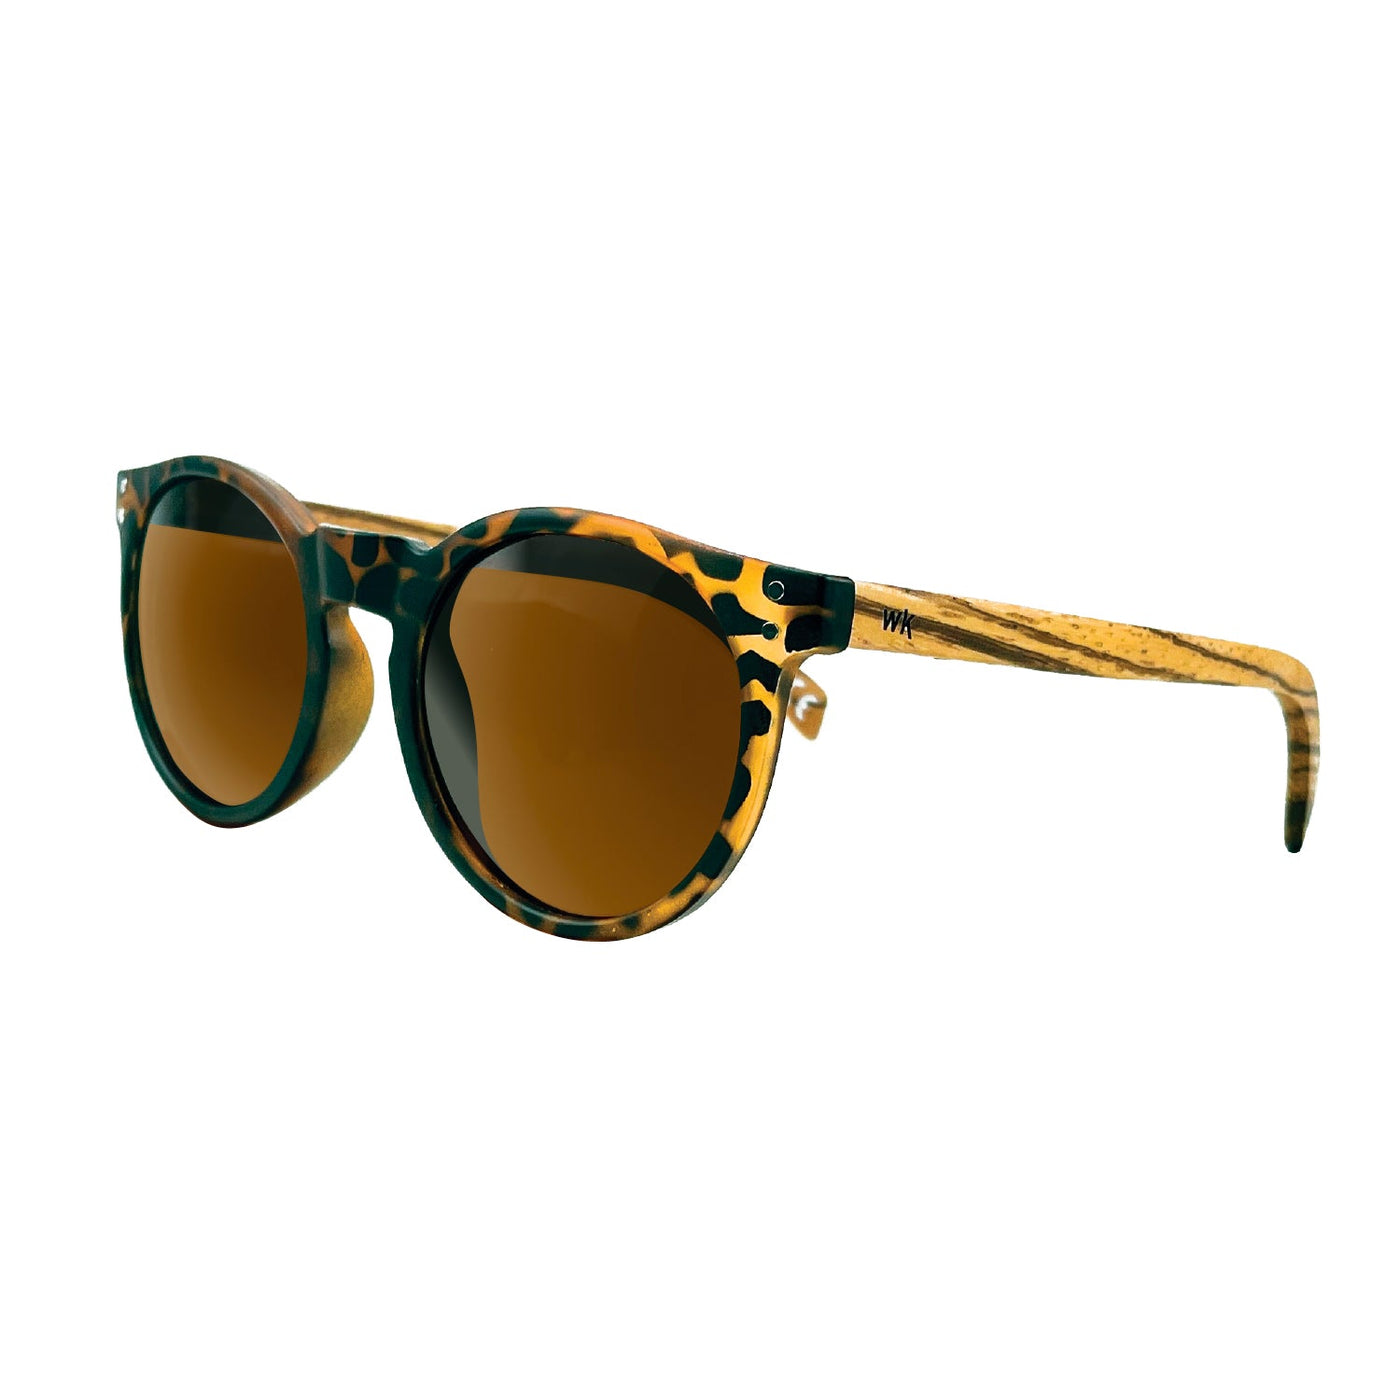 Wood Sunglasses Polarised for Men and Women - Tortoise Shell